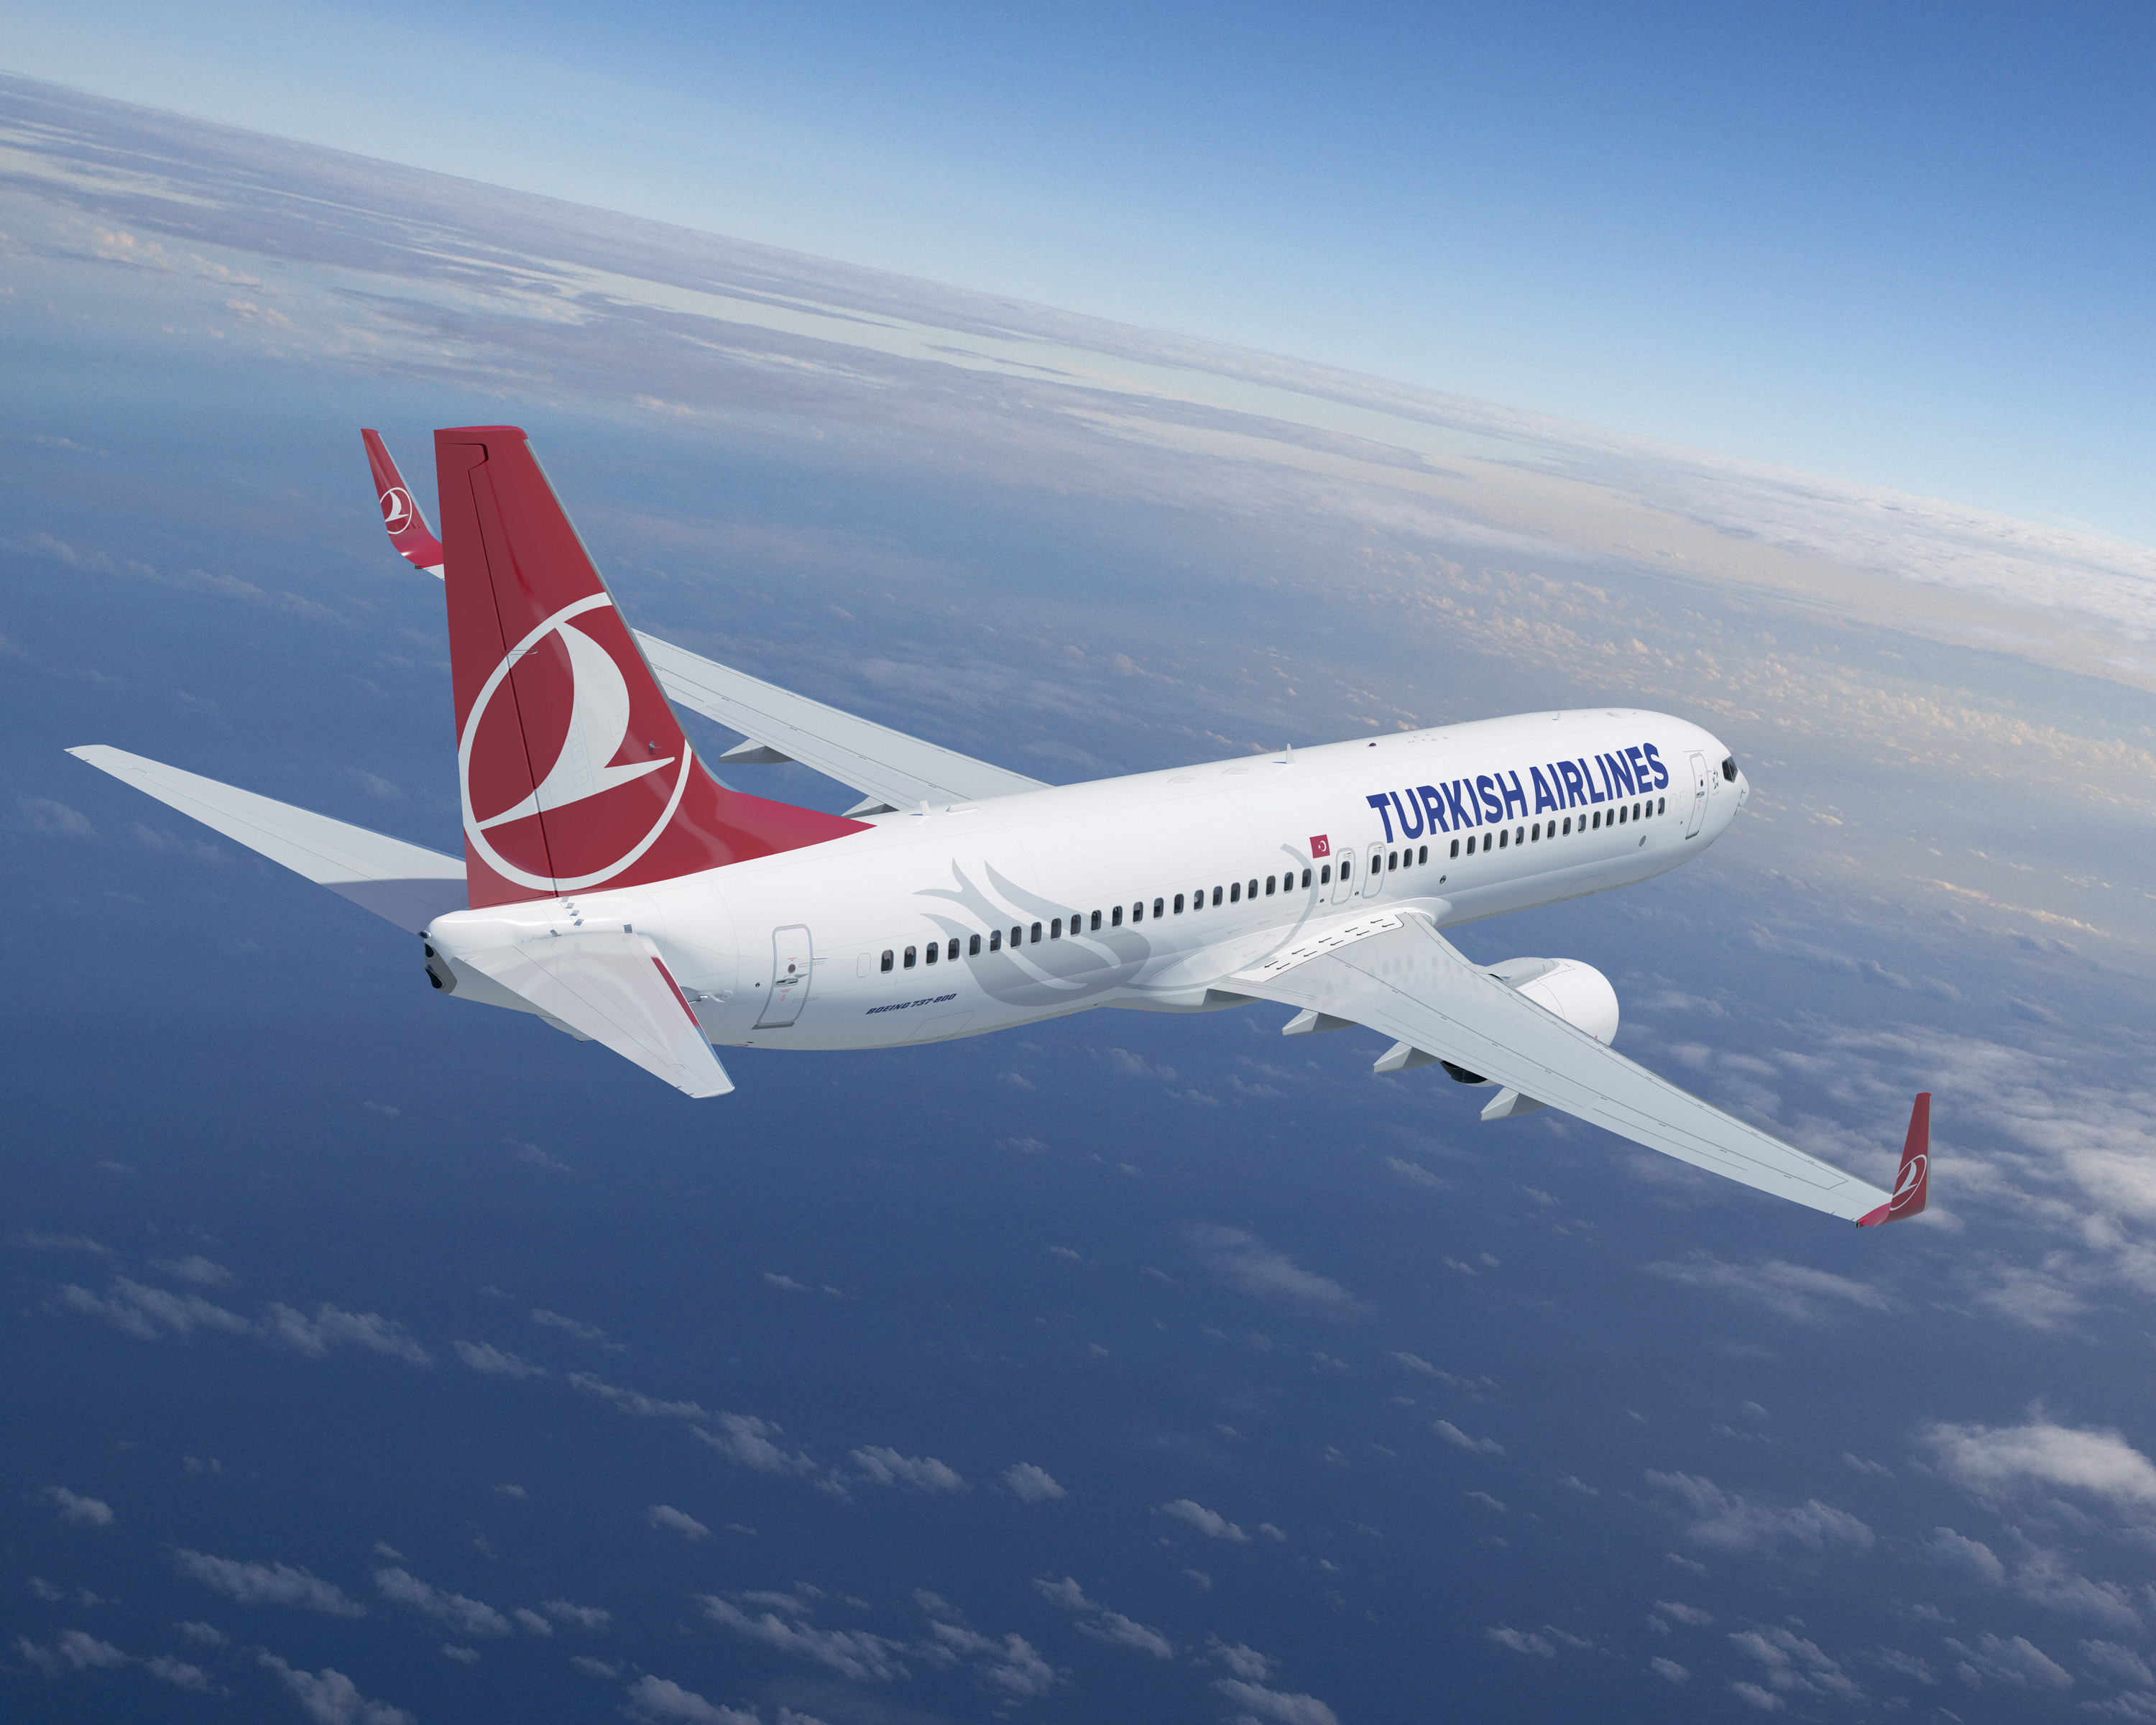 Турецкие авиалинии продолжают набирать популярность